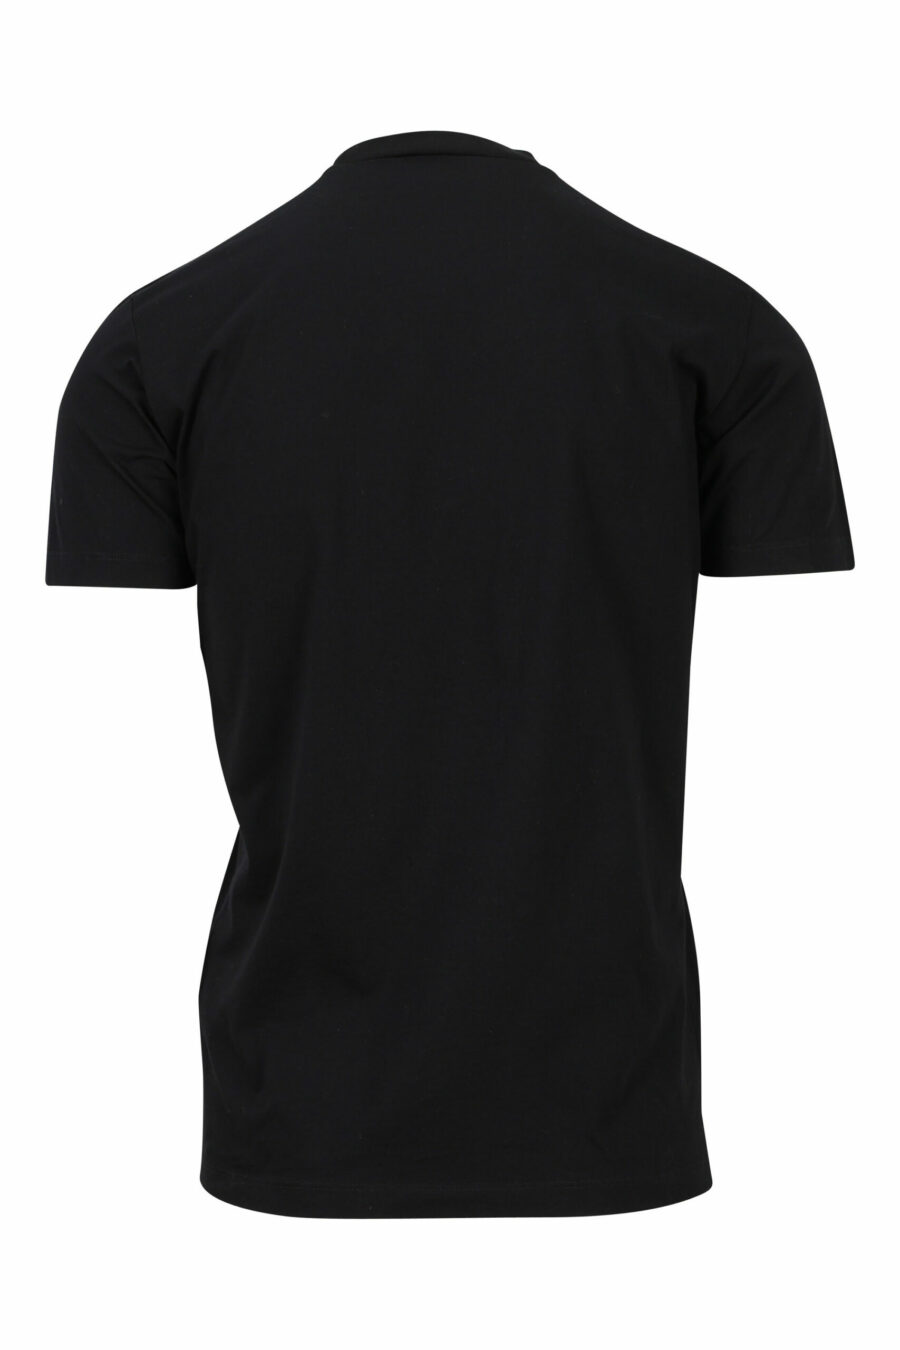 T-shirt noir avec maxilogo monochrome gaufré - 8052134946459 1 scaled